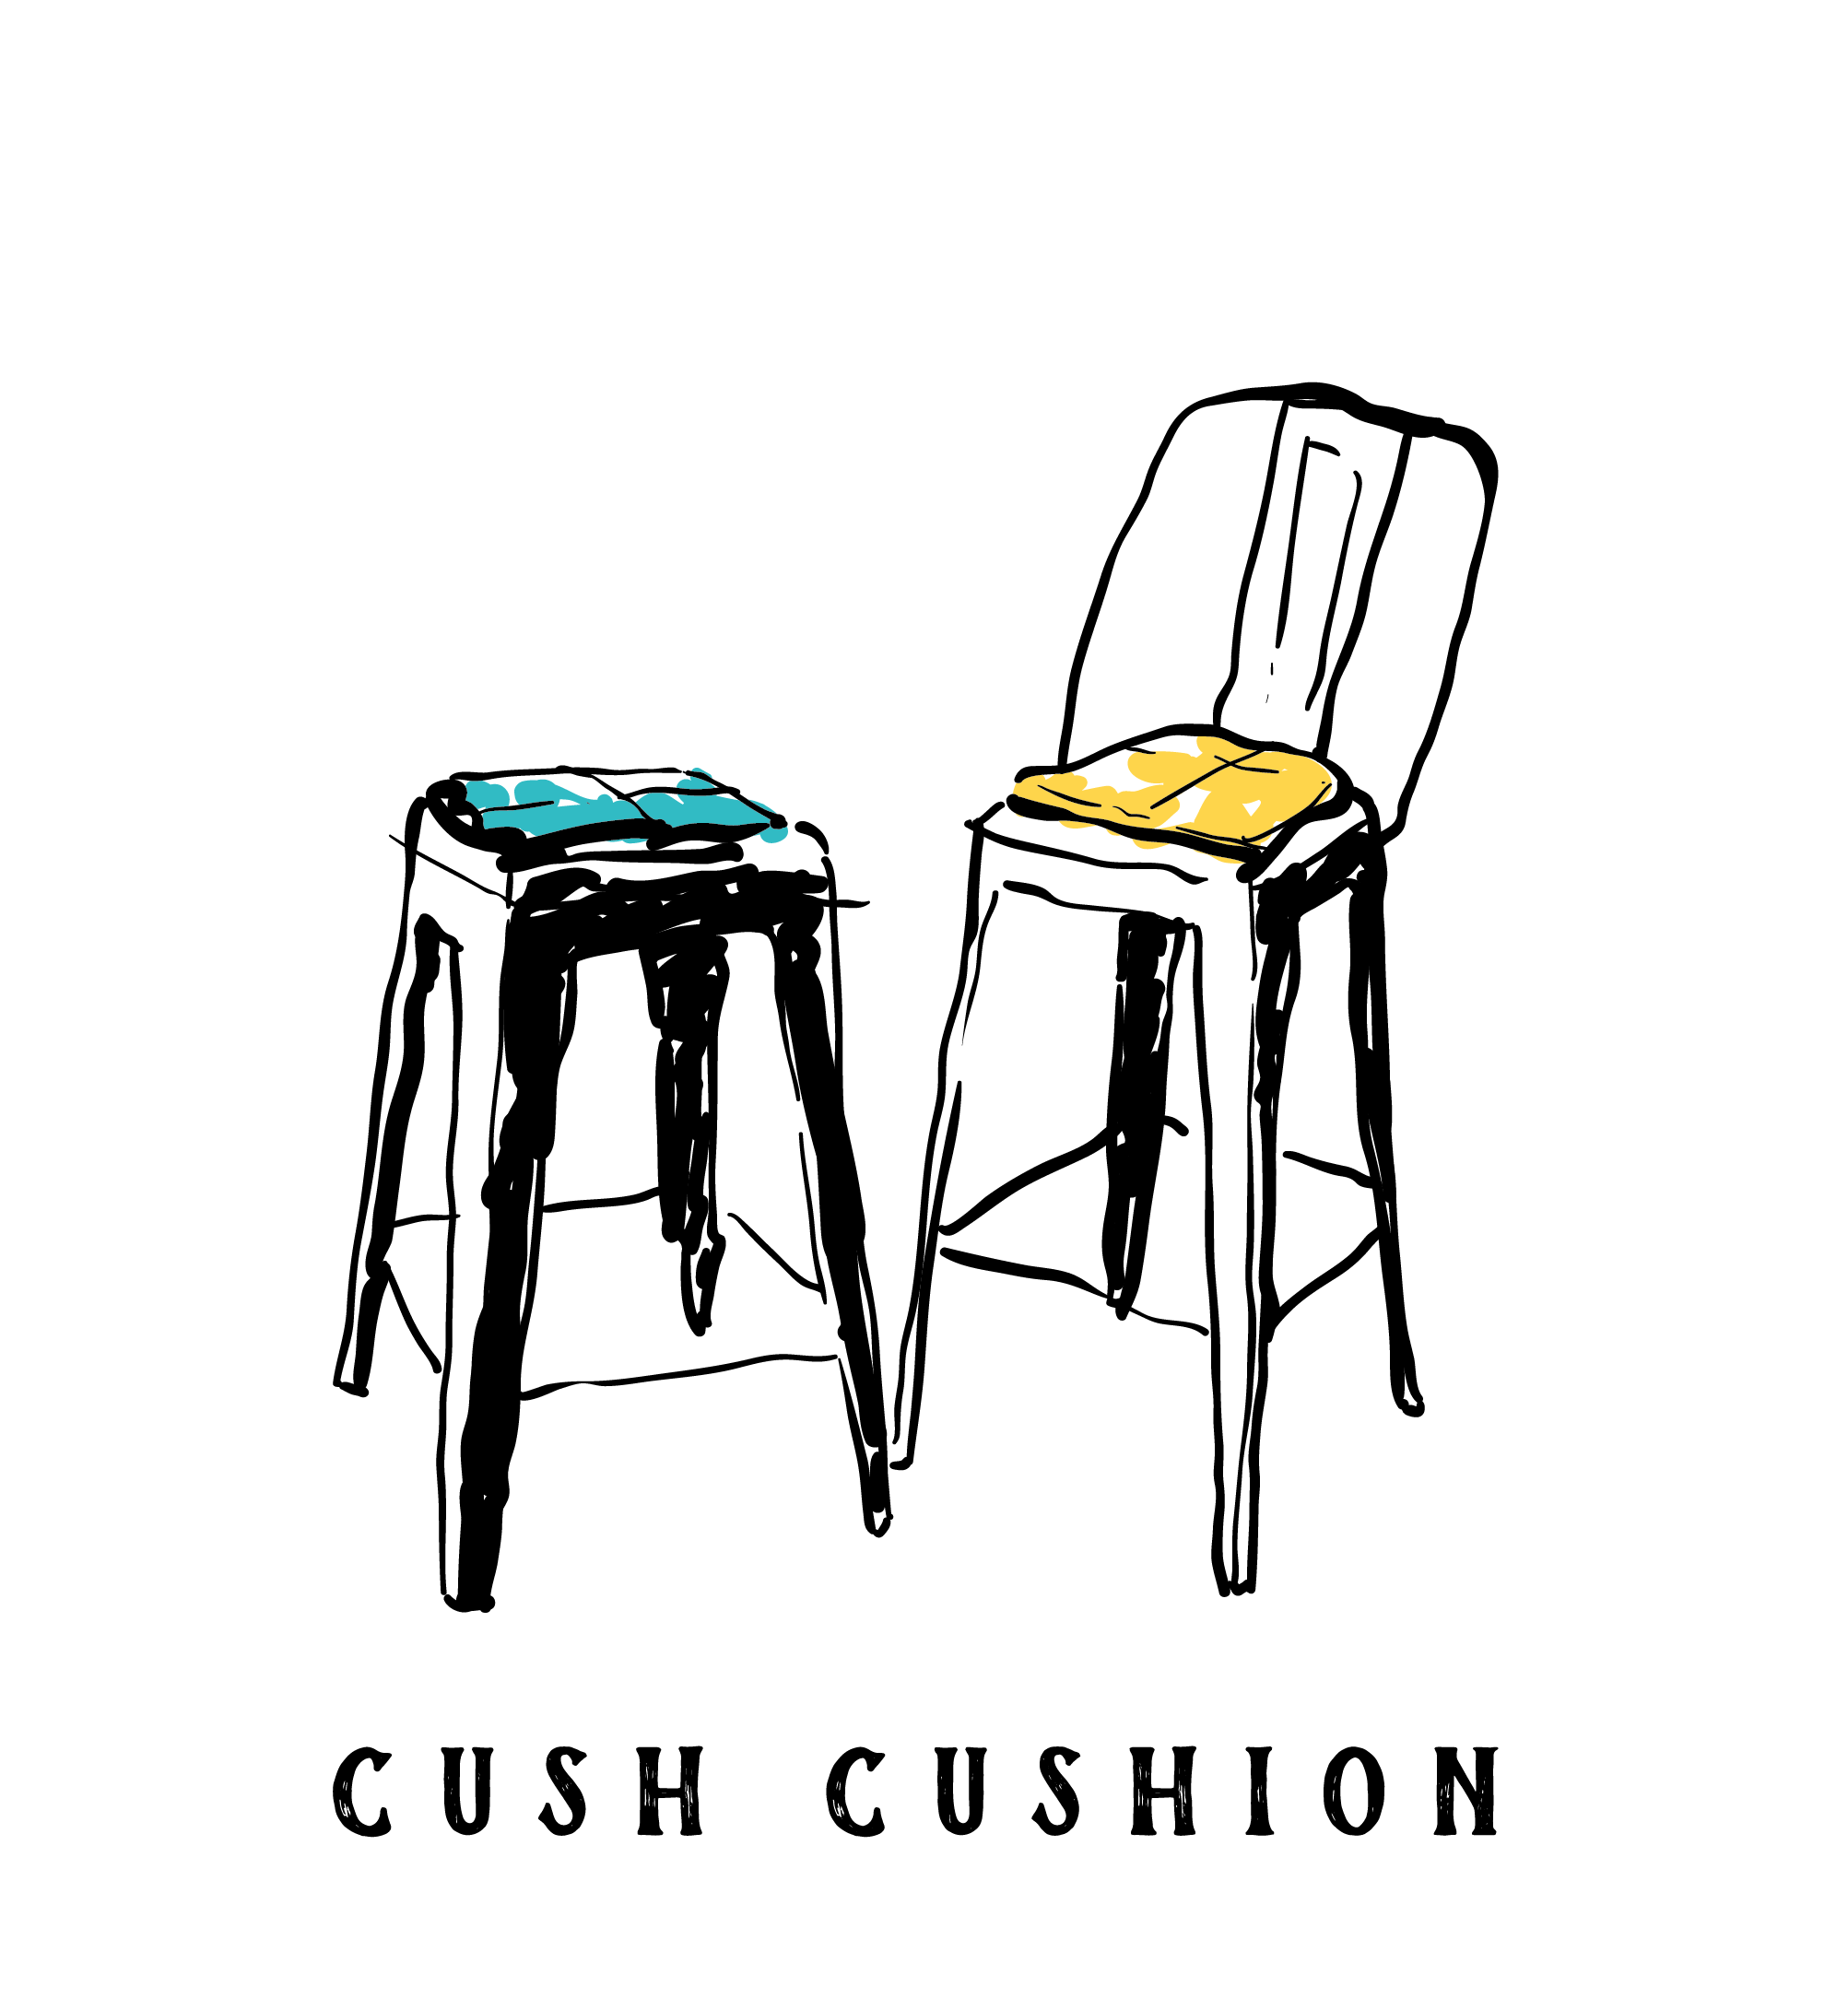 Cush Cushion